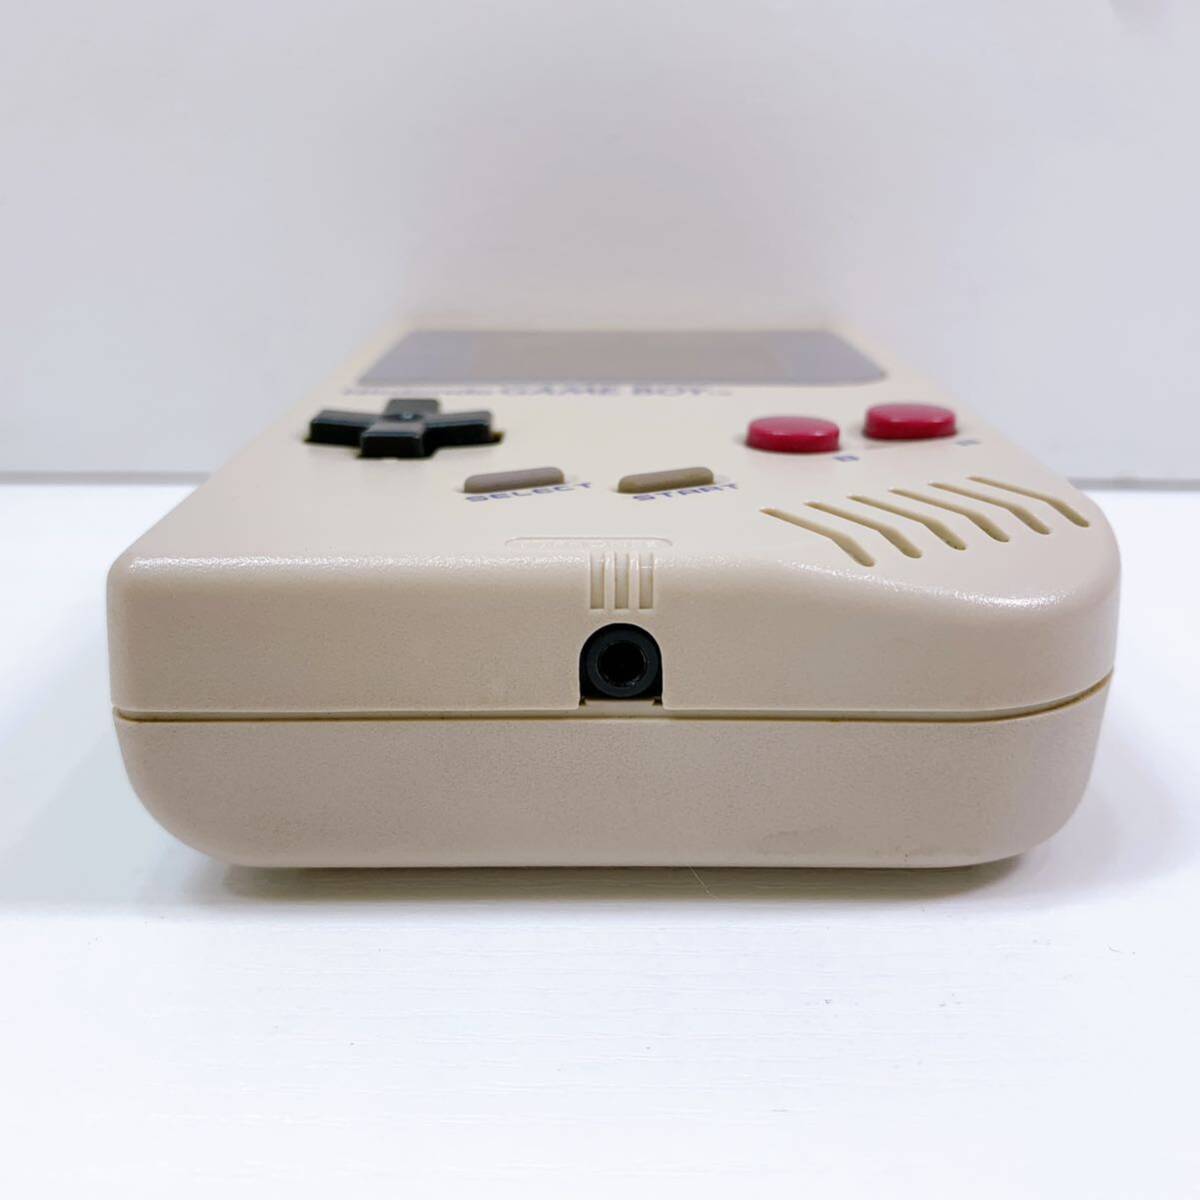 190【中古】Nintendo GAME BOY 本体 DMG-01 ニンテンドー ゲームボーイ 初代 任天堂 ゲーム機 旧タイプ 動作未確認 ジャンク 現状品_画像5